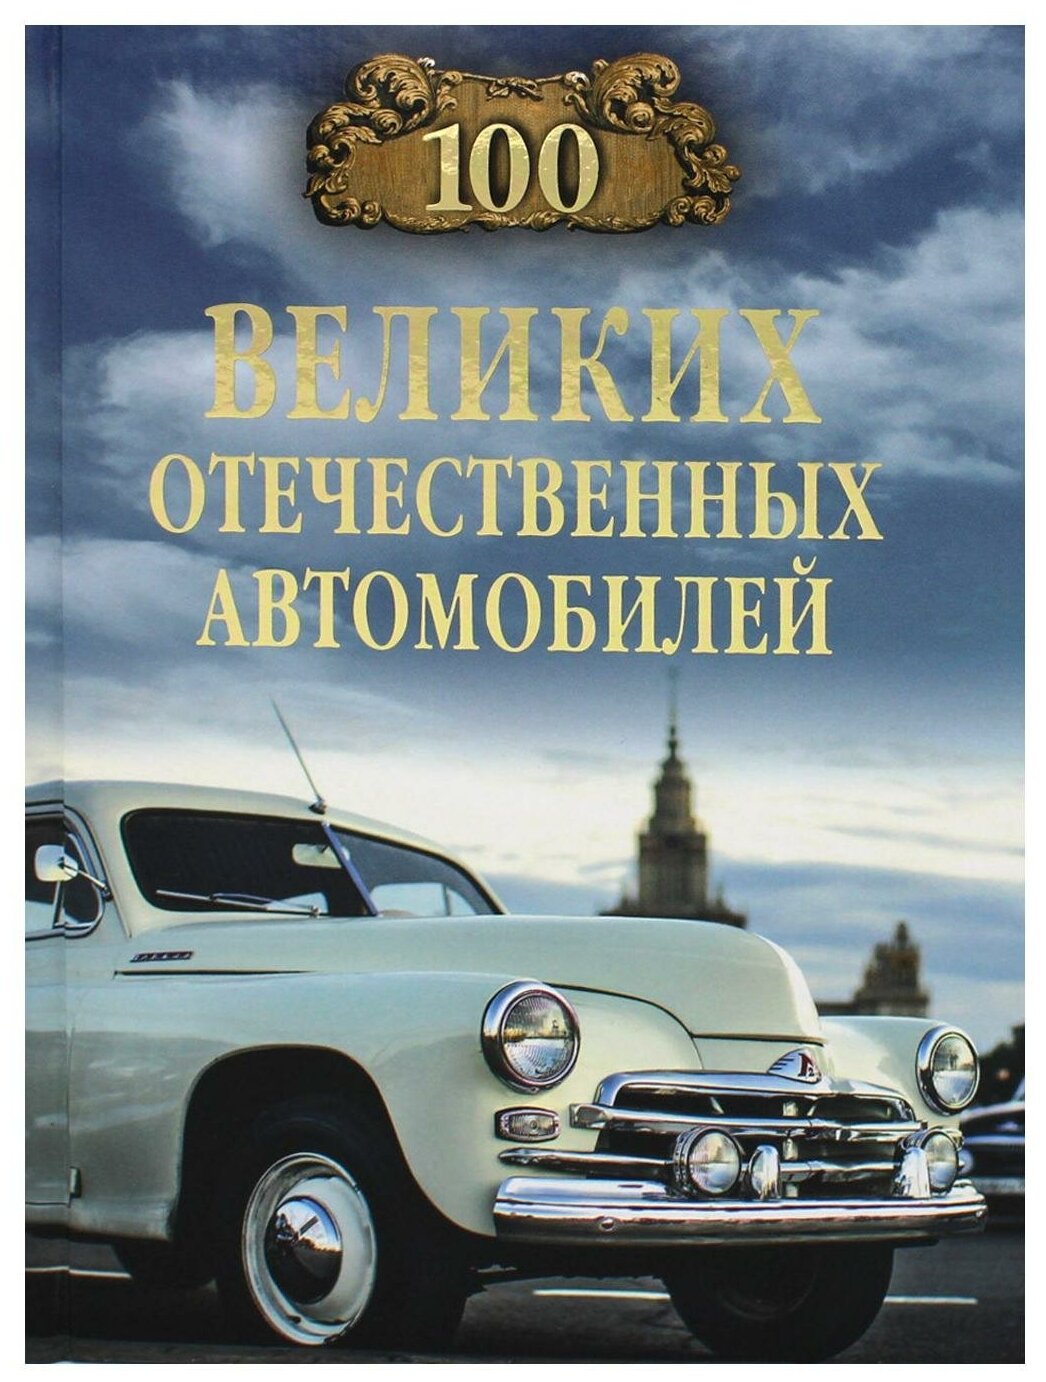 100 великих отечественных автомобилей - фото №1